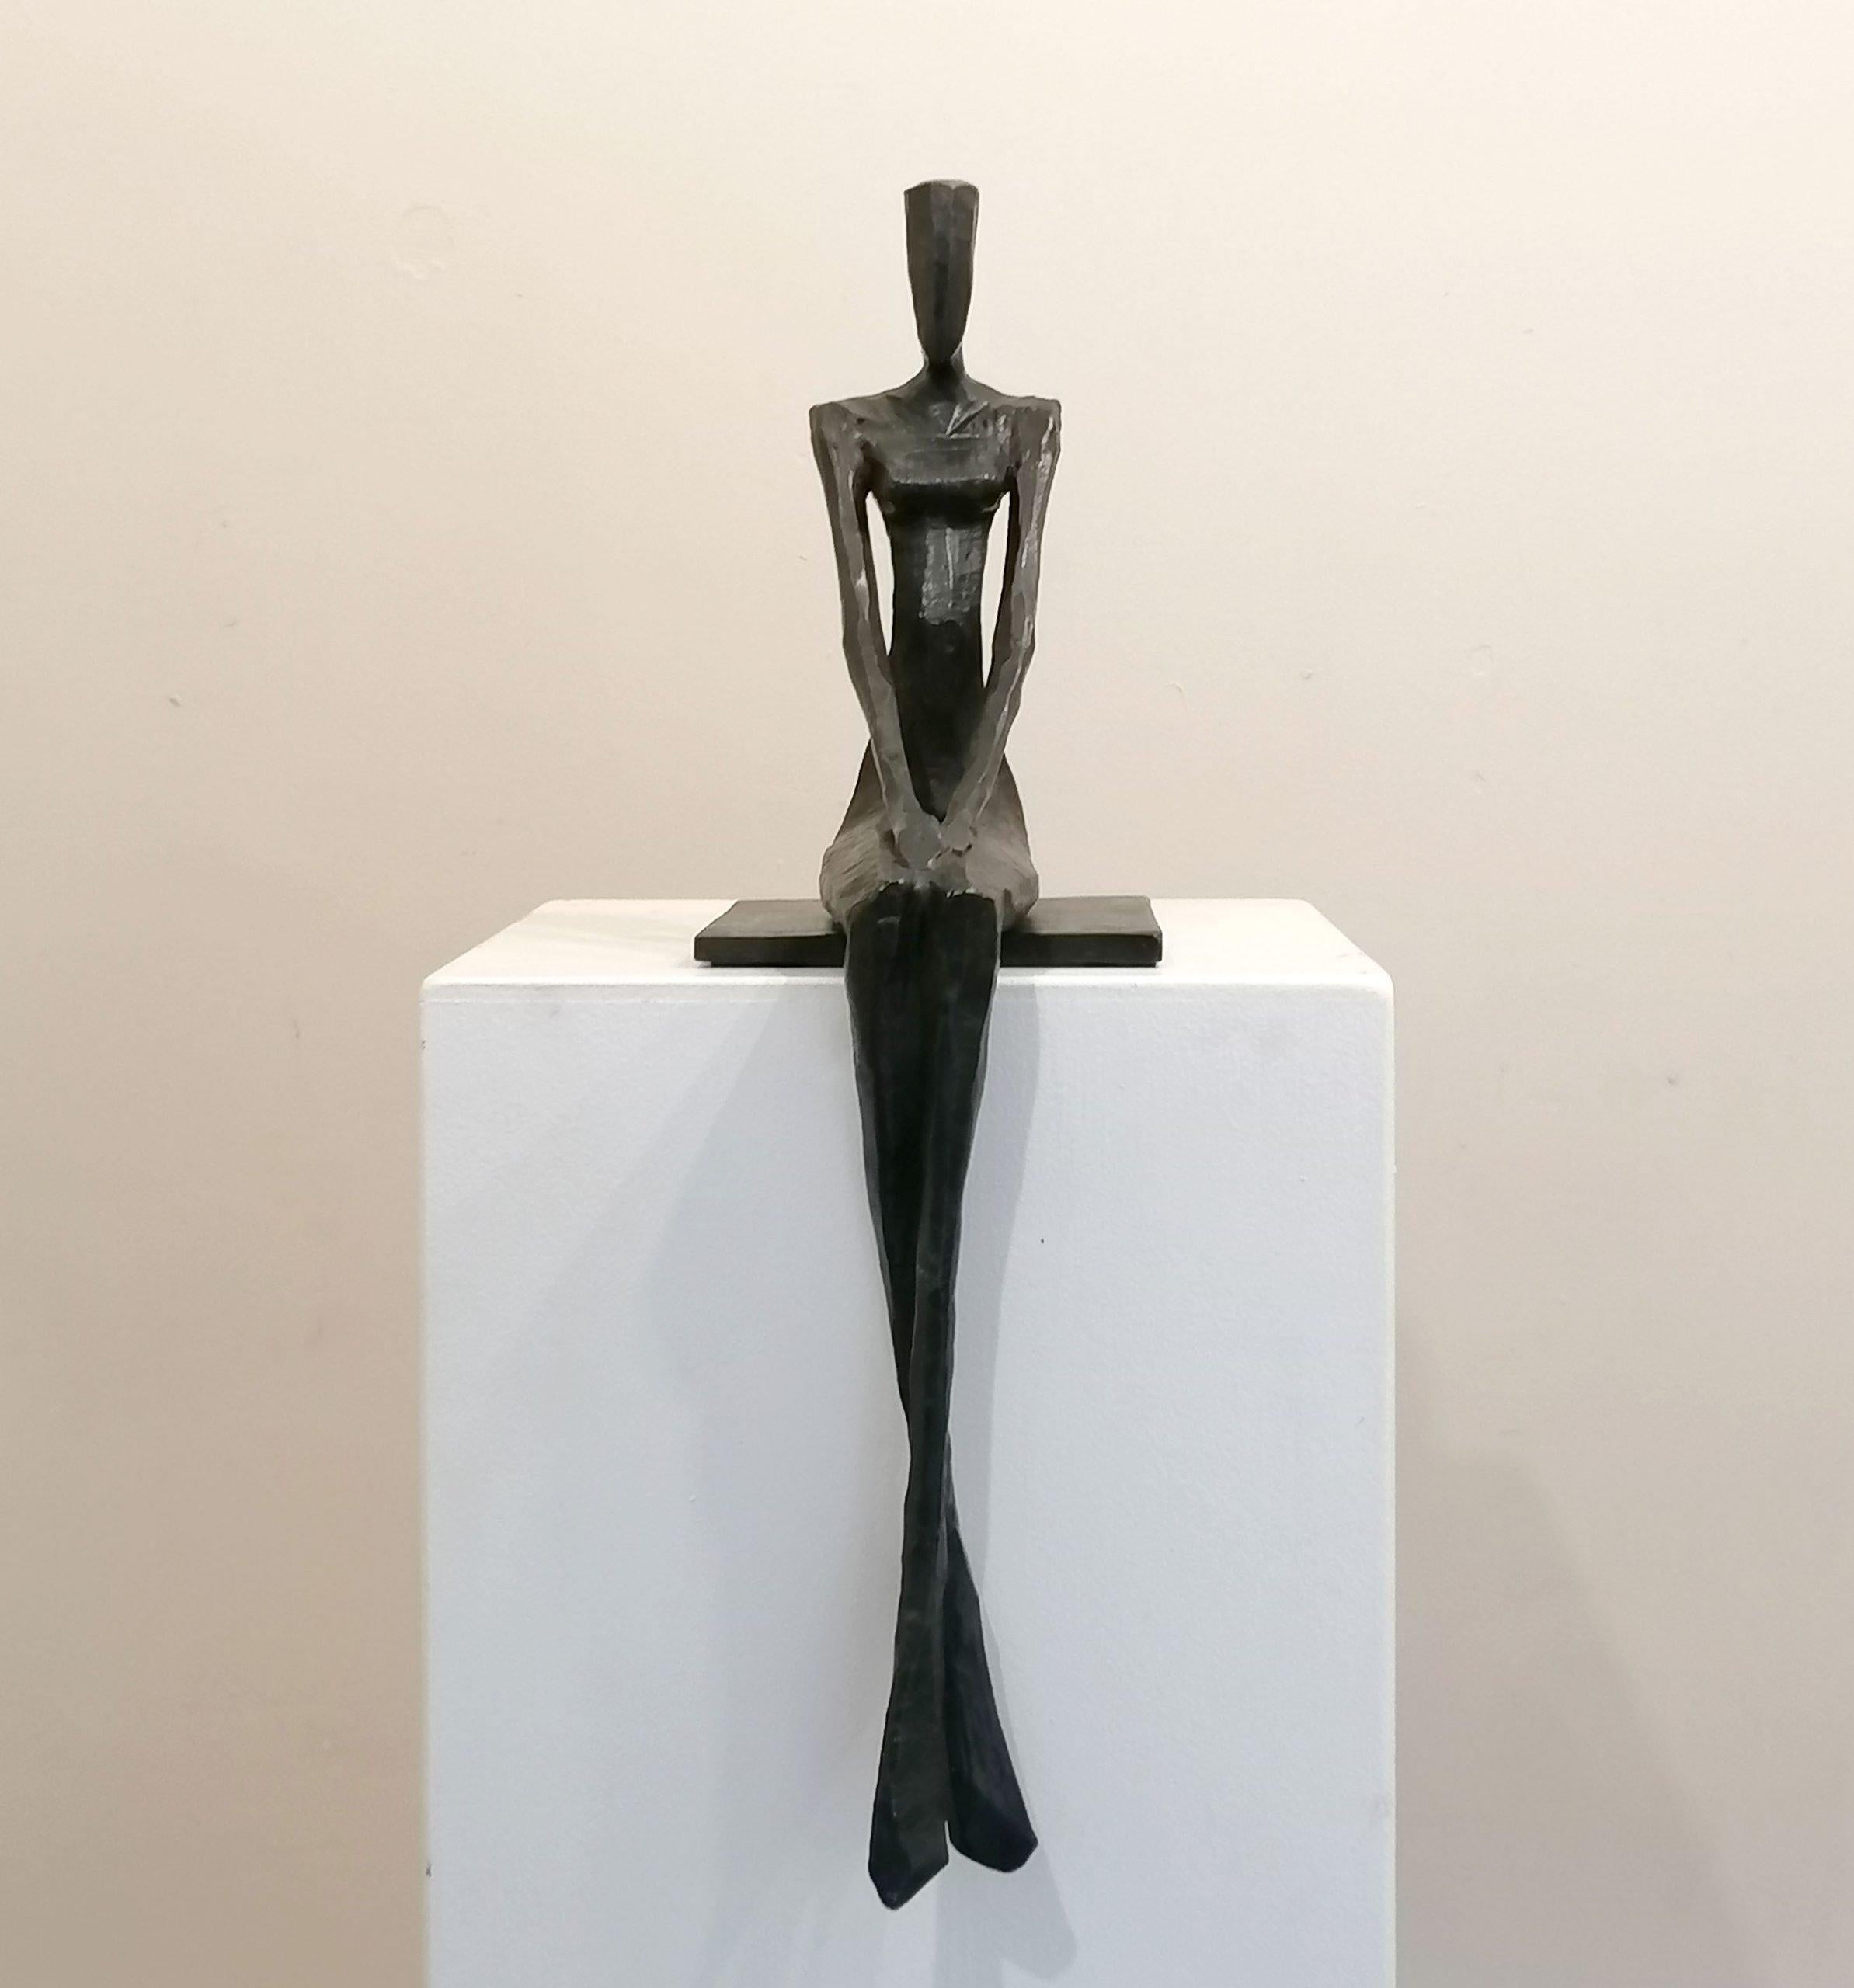 Dorothea ist eine elegante figurative Bronzeskulptur von Nando Kallweit.
Eine langgestreckte, anmutig sitzende weibliche Form.
Der stilisierte, ägyptisch angehauchte Kopf verweist auf die Bedeutung des kulturellen Erbes, ist aber modernen